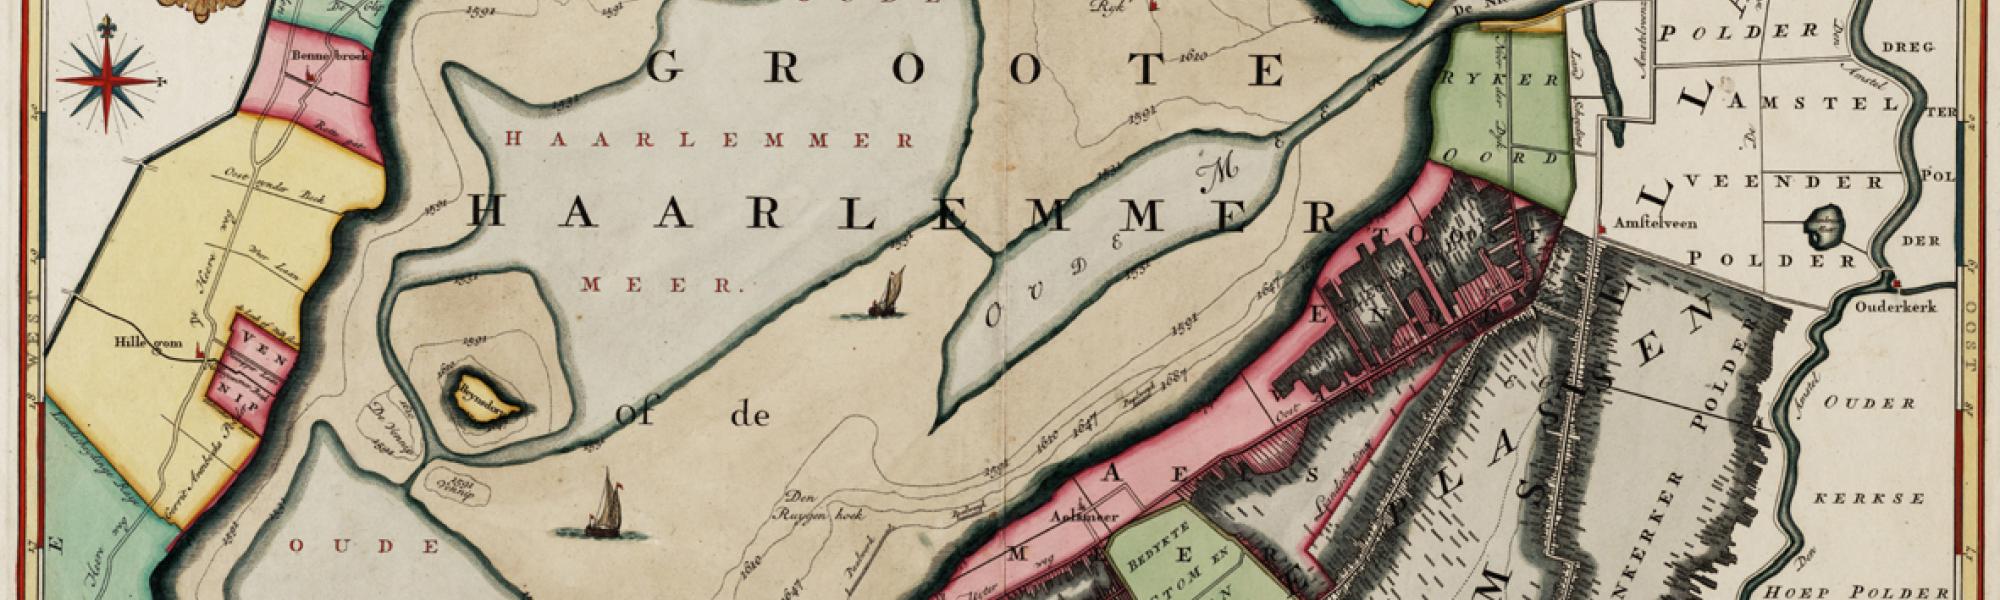 Historische kaart haarlemmermeer